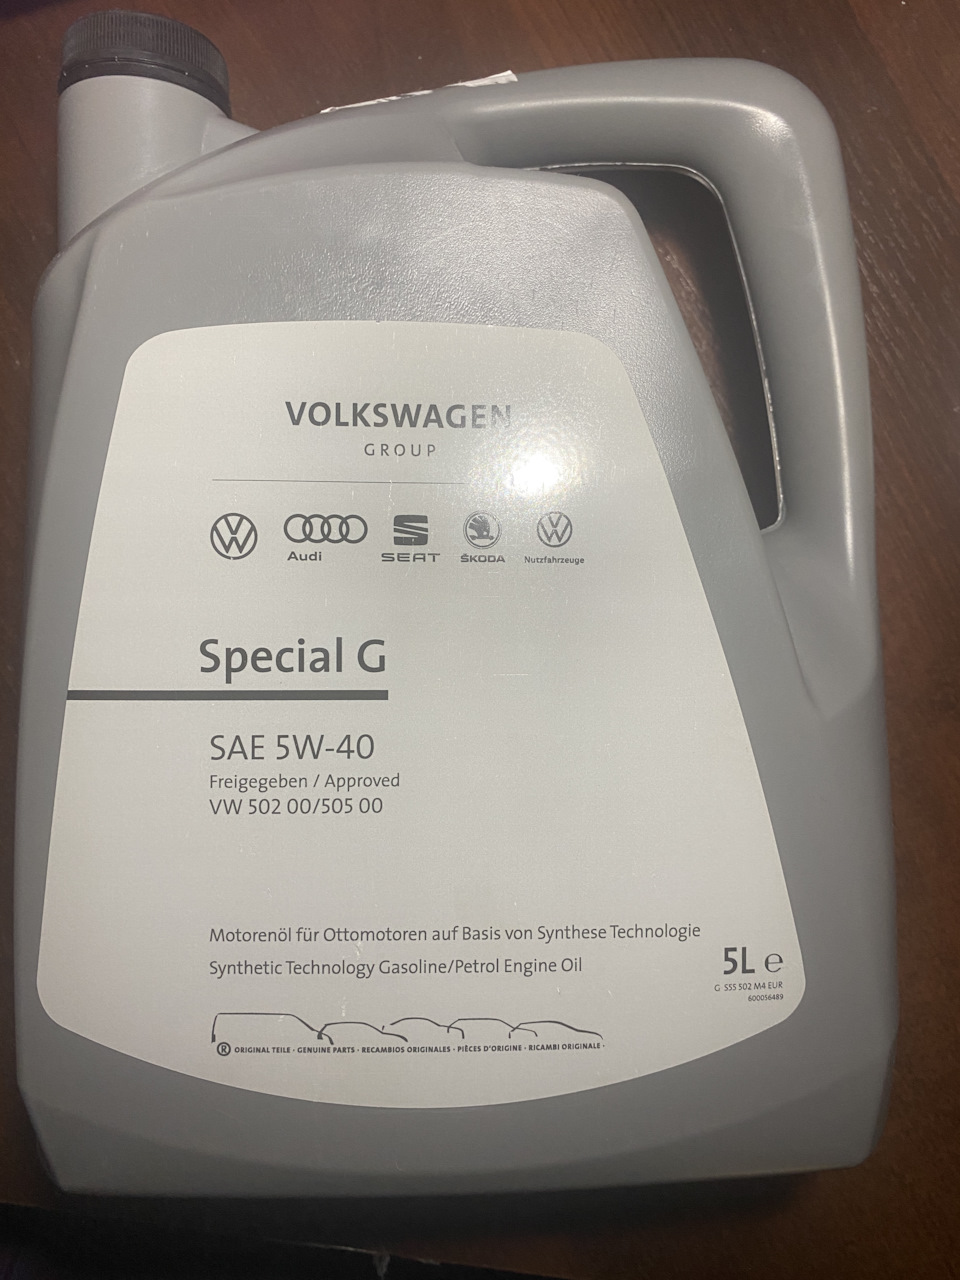 VW 502 минеральное. Масло для Фольксваген поло седан 2017 года. VW 505.00/505.01 что означает.